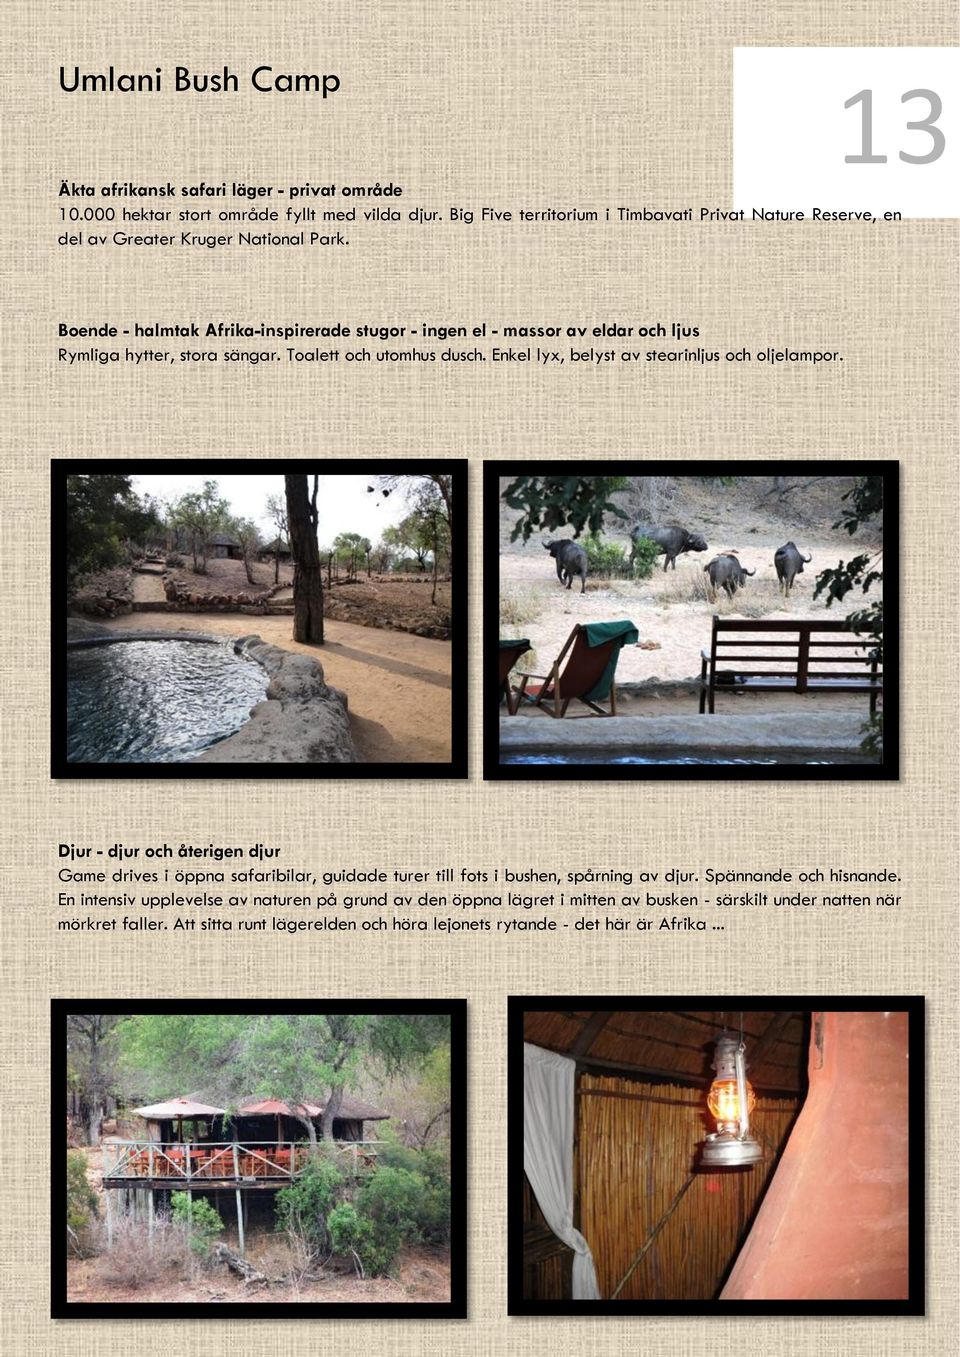 Boende - halmtak Afrika-inspirerade stugor - ingen el - massor av eldar och ljus Rymliga hytter, stora sängar. Toalett och utomhus dusch.